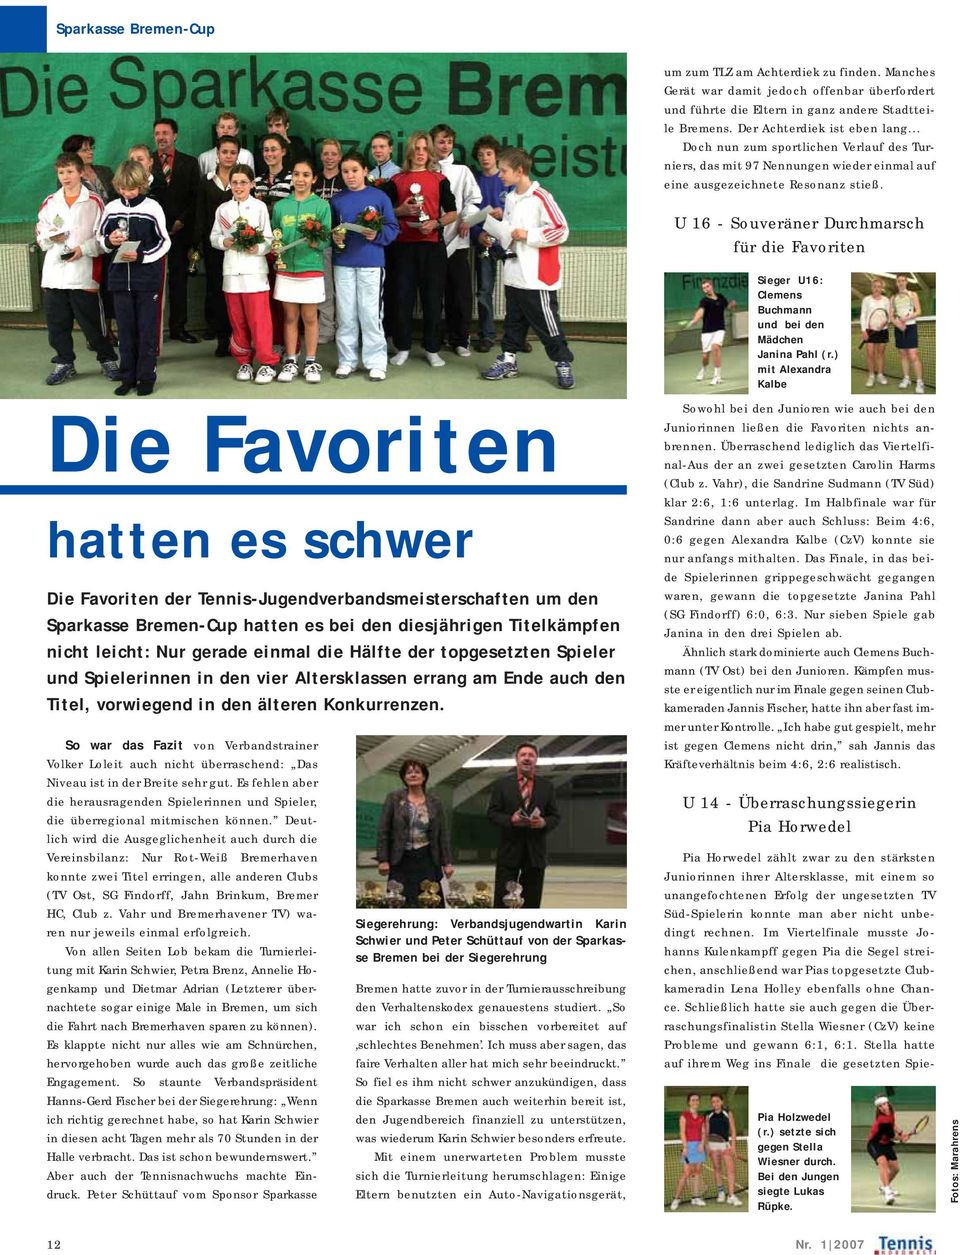 U 16 - Souveräner Durchmarsch für die Favoriten Die Favoriten hatten es schwer Die Favoriten der Tennis-Jugendverbandsmeisterschaften um den Sparkasse Bremen-Cup hatten es bei den diesjährigen